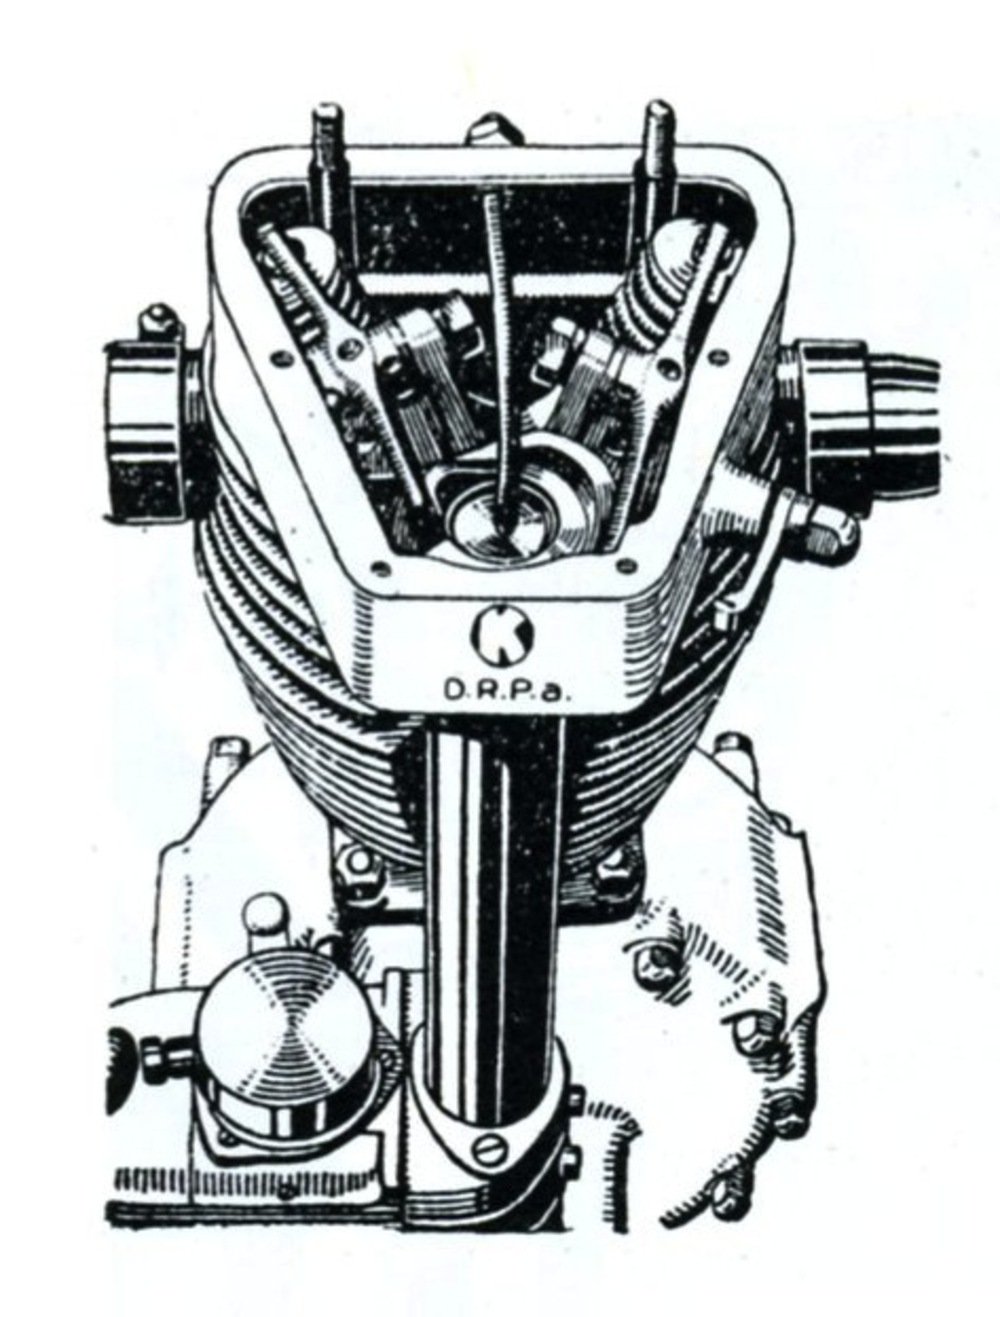 Il motore tedesco &ldquo;K&rdquo; utilizzava un unico disco, nel quale erano ricavate due piste concentriche con relative camme frontali, per azionare le due valvole mediante bilancieri a due bracci